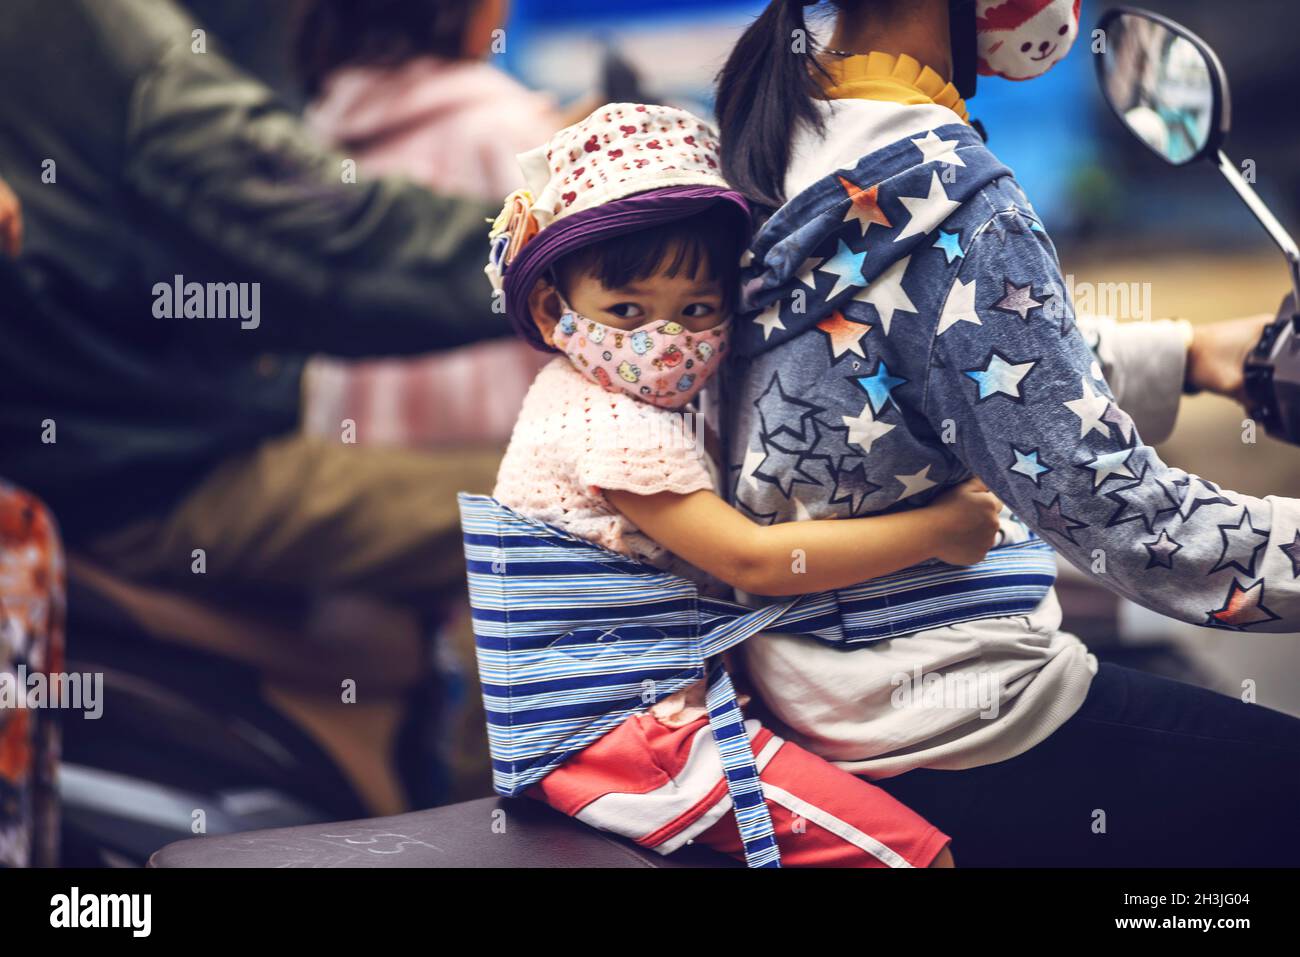 DELTA du Mékong - JUIN 14 : petite fille non identifiée sur une moto avec sa mère, le 14 juin 2015 dans le Delta du Mékong, Vietnam Banque D'Images